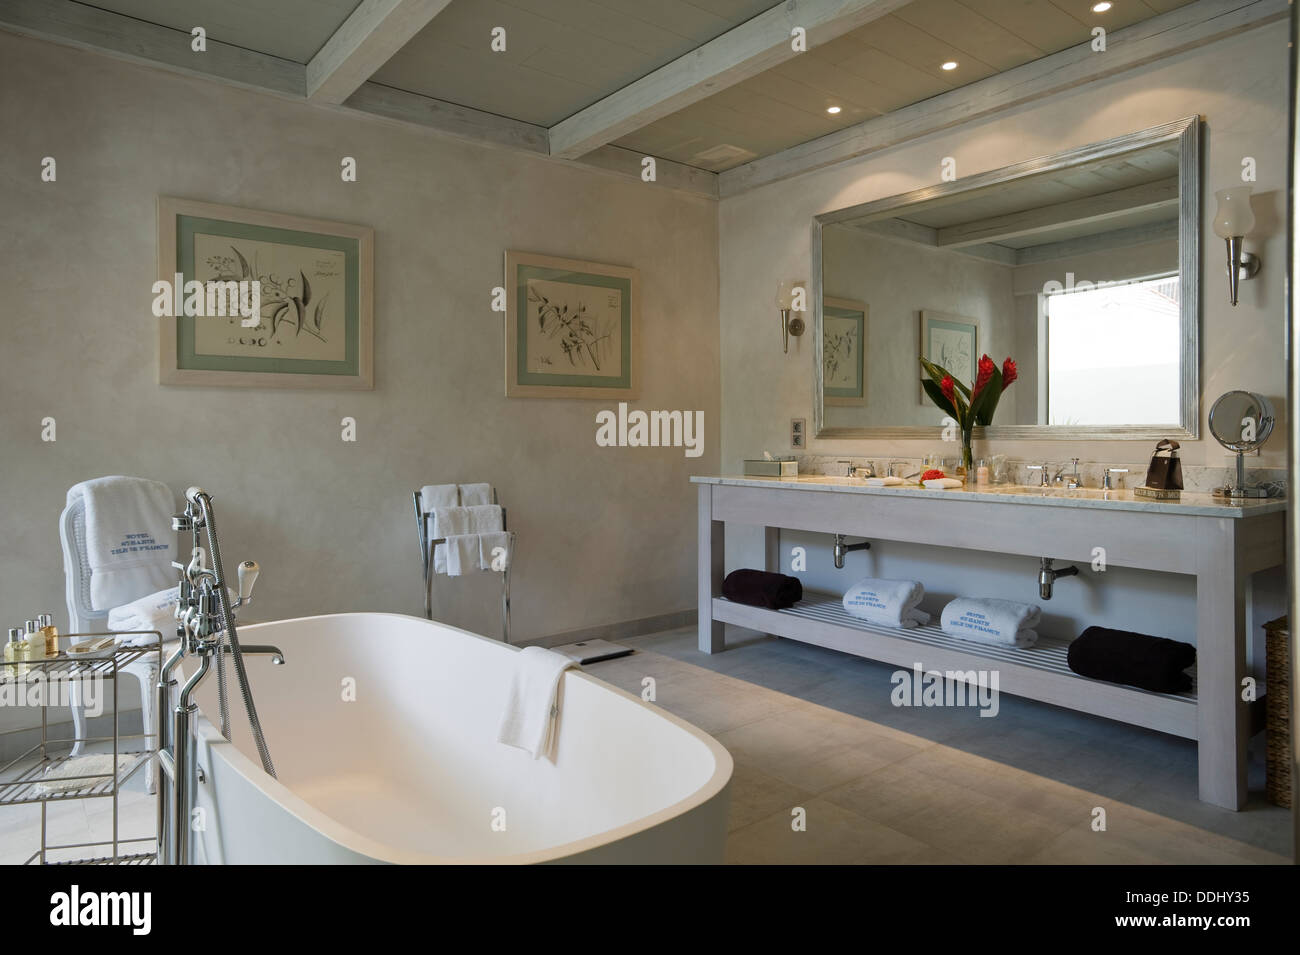 Doppelte Becken Gerät im Badezimmer mit Marmor Bodenfliesen, strahlte Decke und großer Spiegel Stockfoto